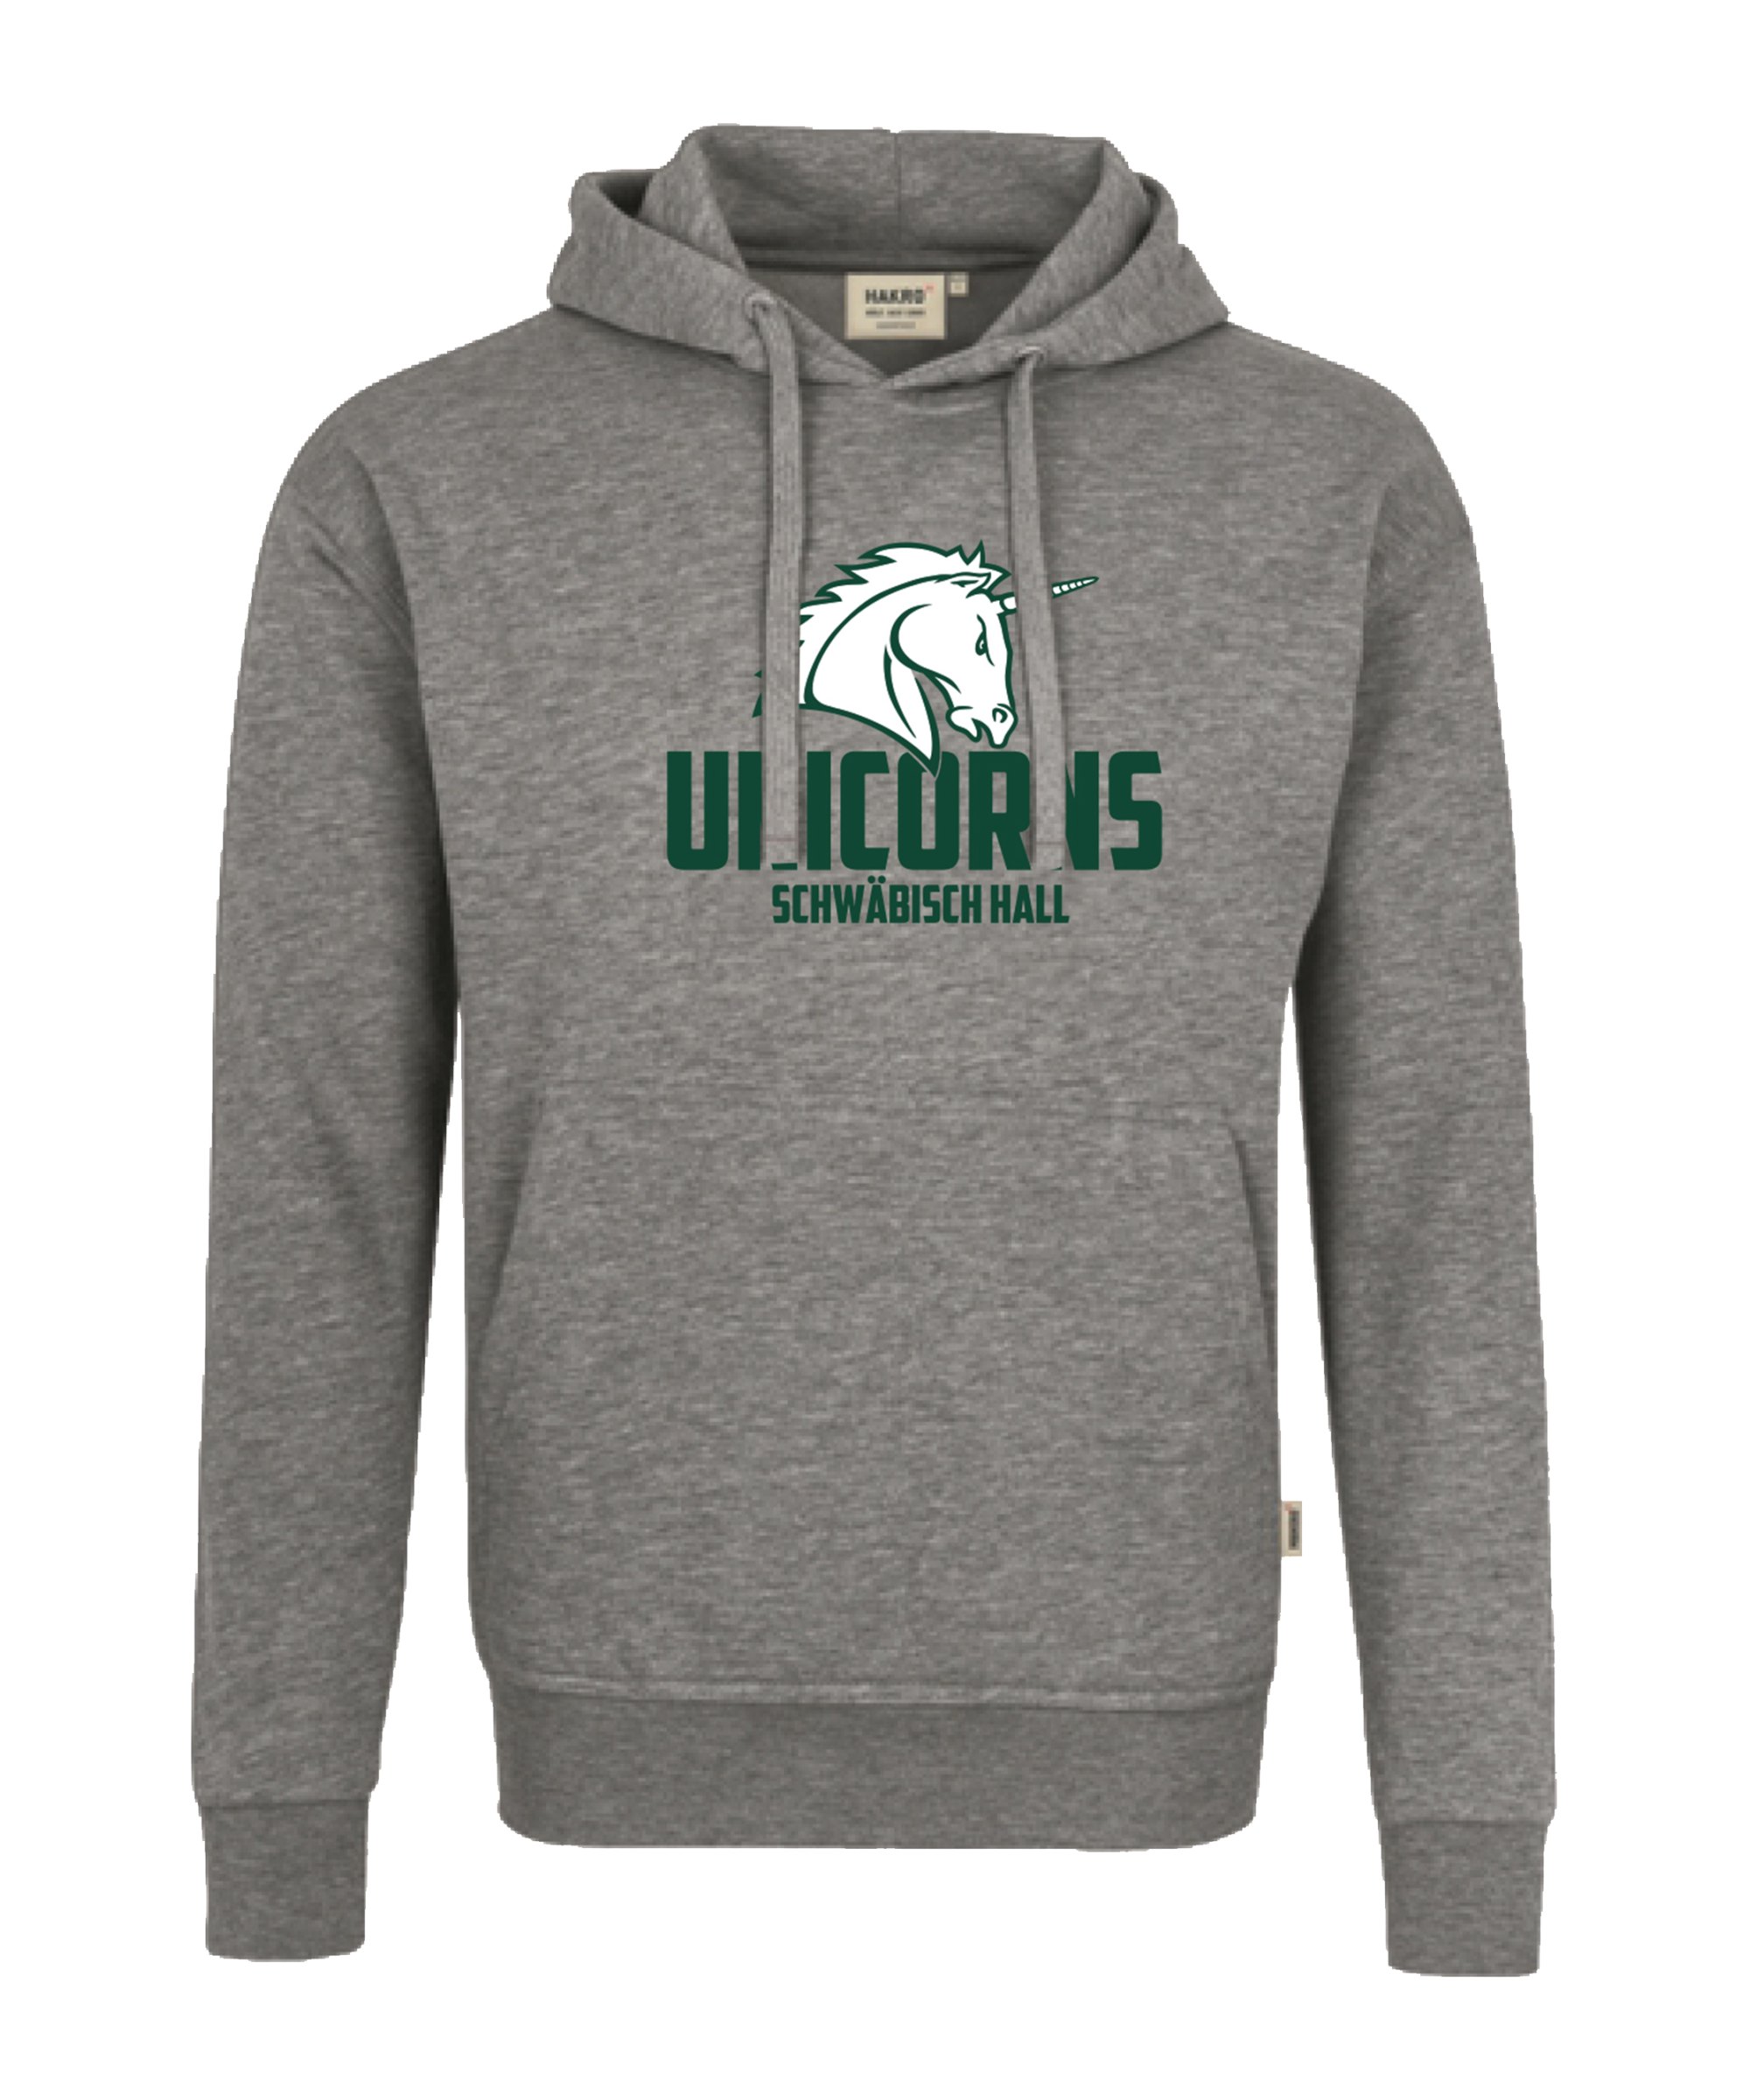 Unicorns Hoody Sweatshirt Premium Grau Grün - grau